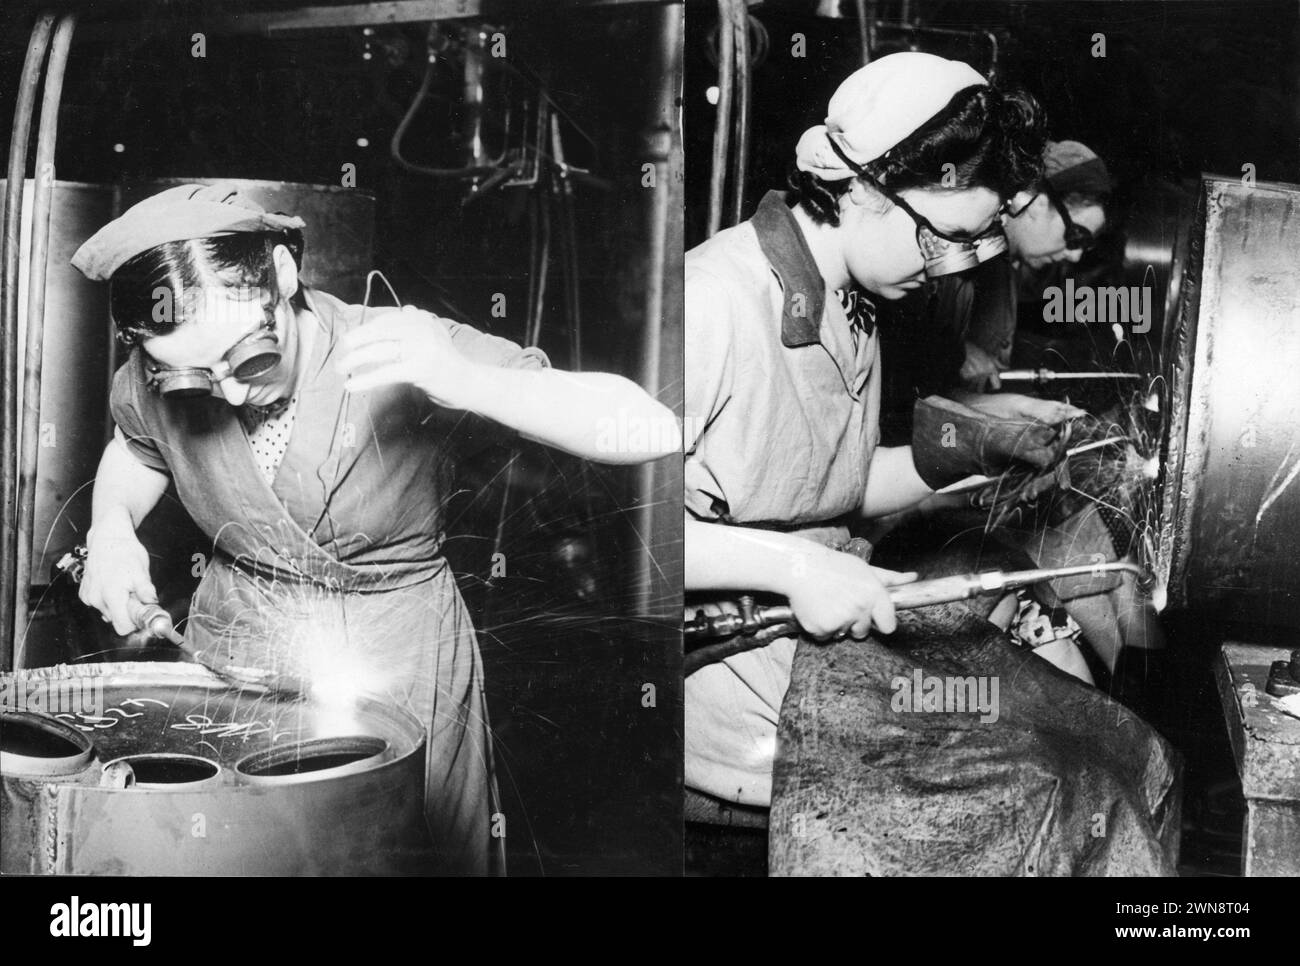 Photographies vintage de femmes soudant des pièces d'armes de charge en profondeur pendant la seconde Guerre mondiale, faisant partie de l'importante contribution des femmes aux efforts de guerre. Soudeuses féminines 1944-1945. Banque D'Images